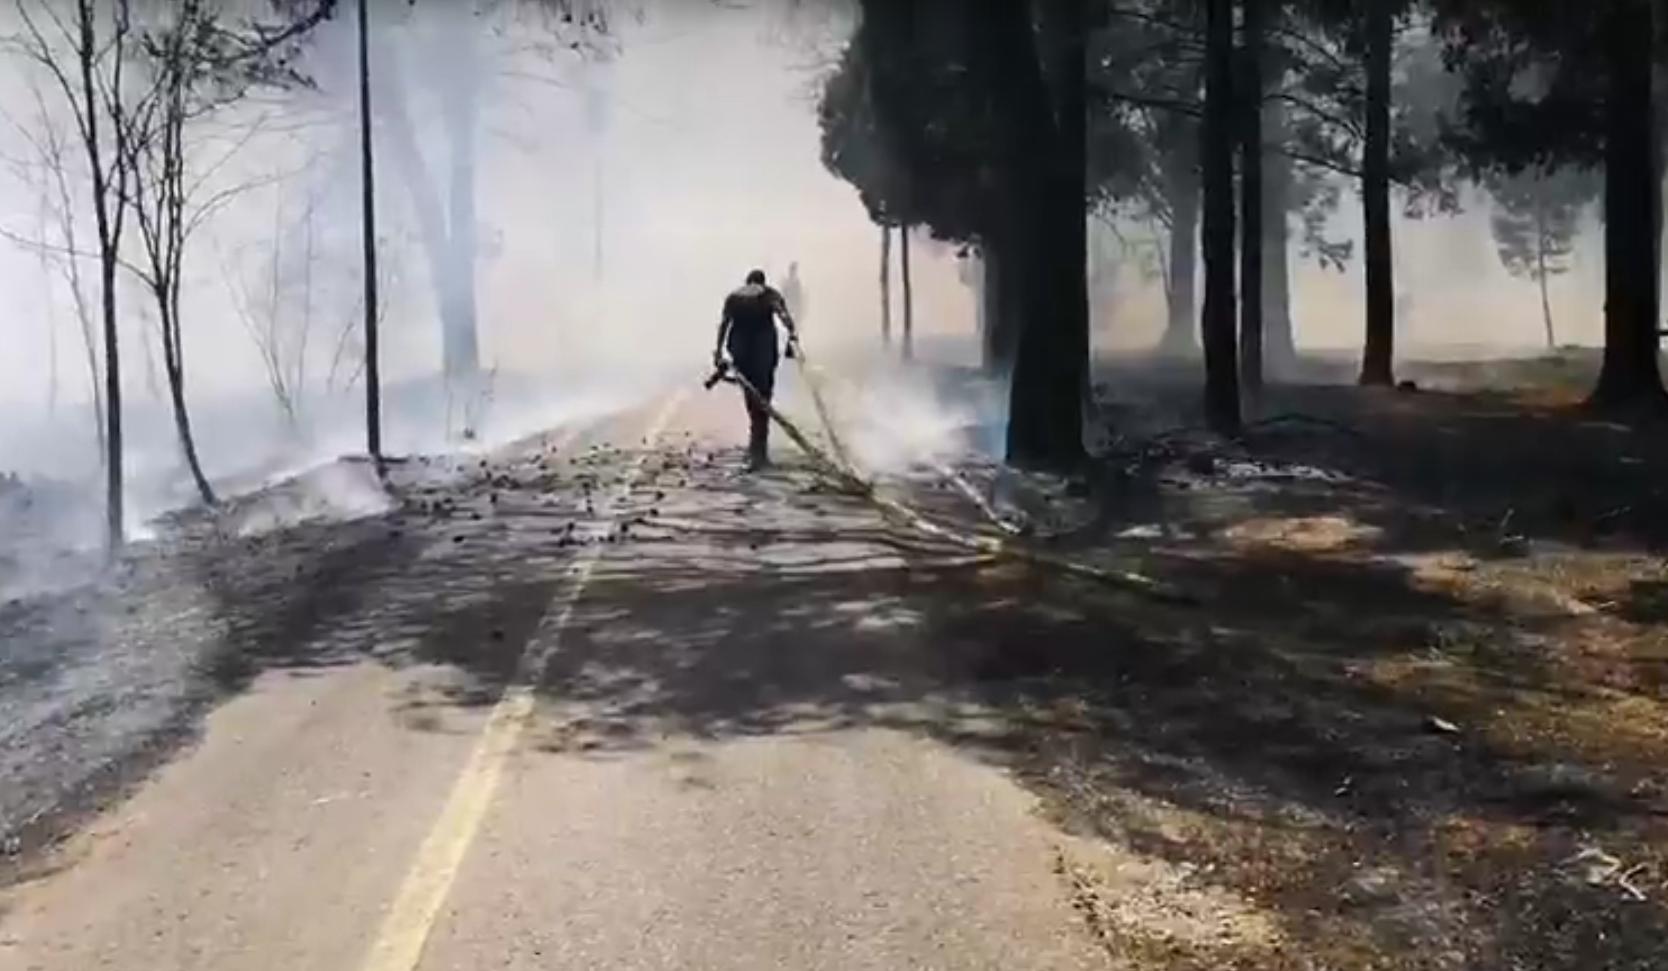 PONOVO AKTIVAN POŽAR NA GORICI! Nekoliko vatrogasnih ekipa pokušava da obuzda vatrenu stihiju koja guta sve pred sobom